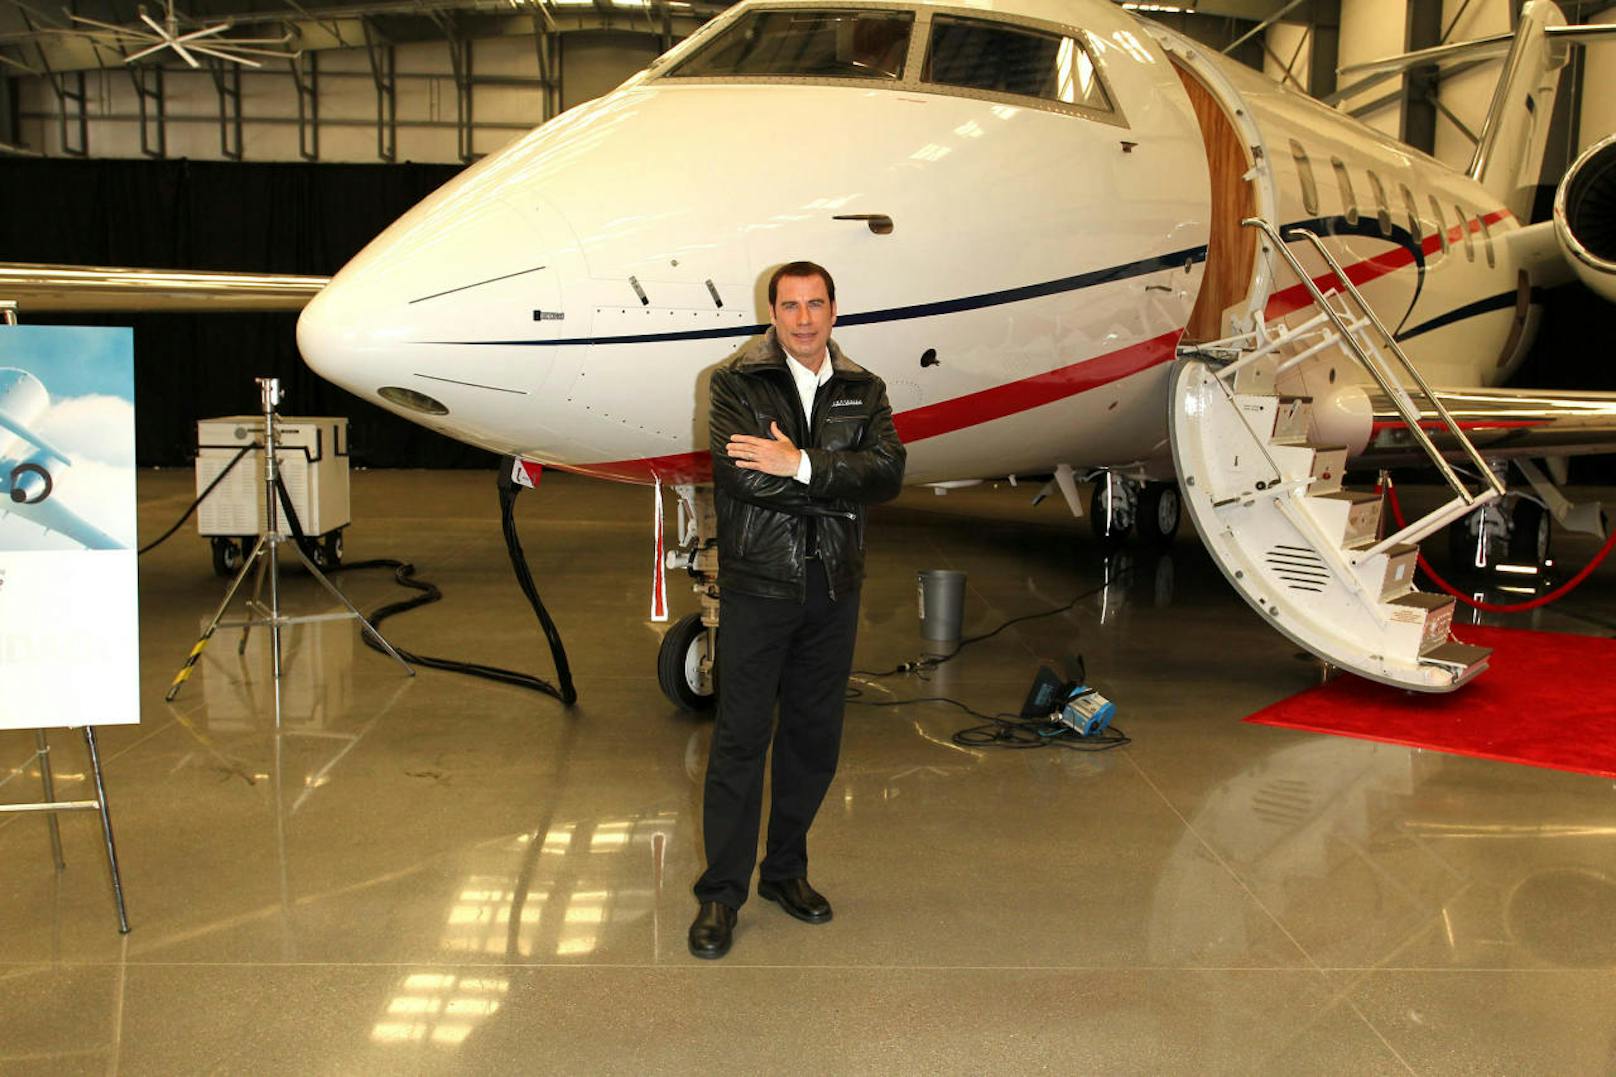 Schauspieler John Travolta besitzt mehrere Flugzeuge, darunter eine Boeing 707.